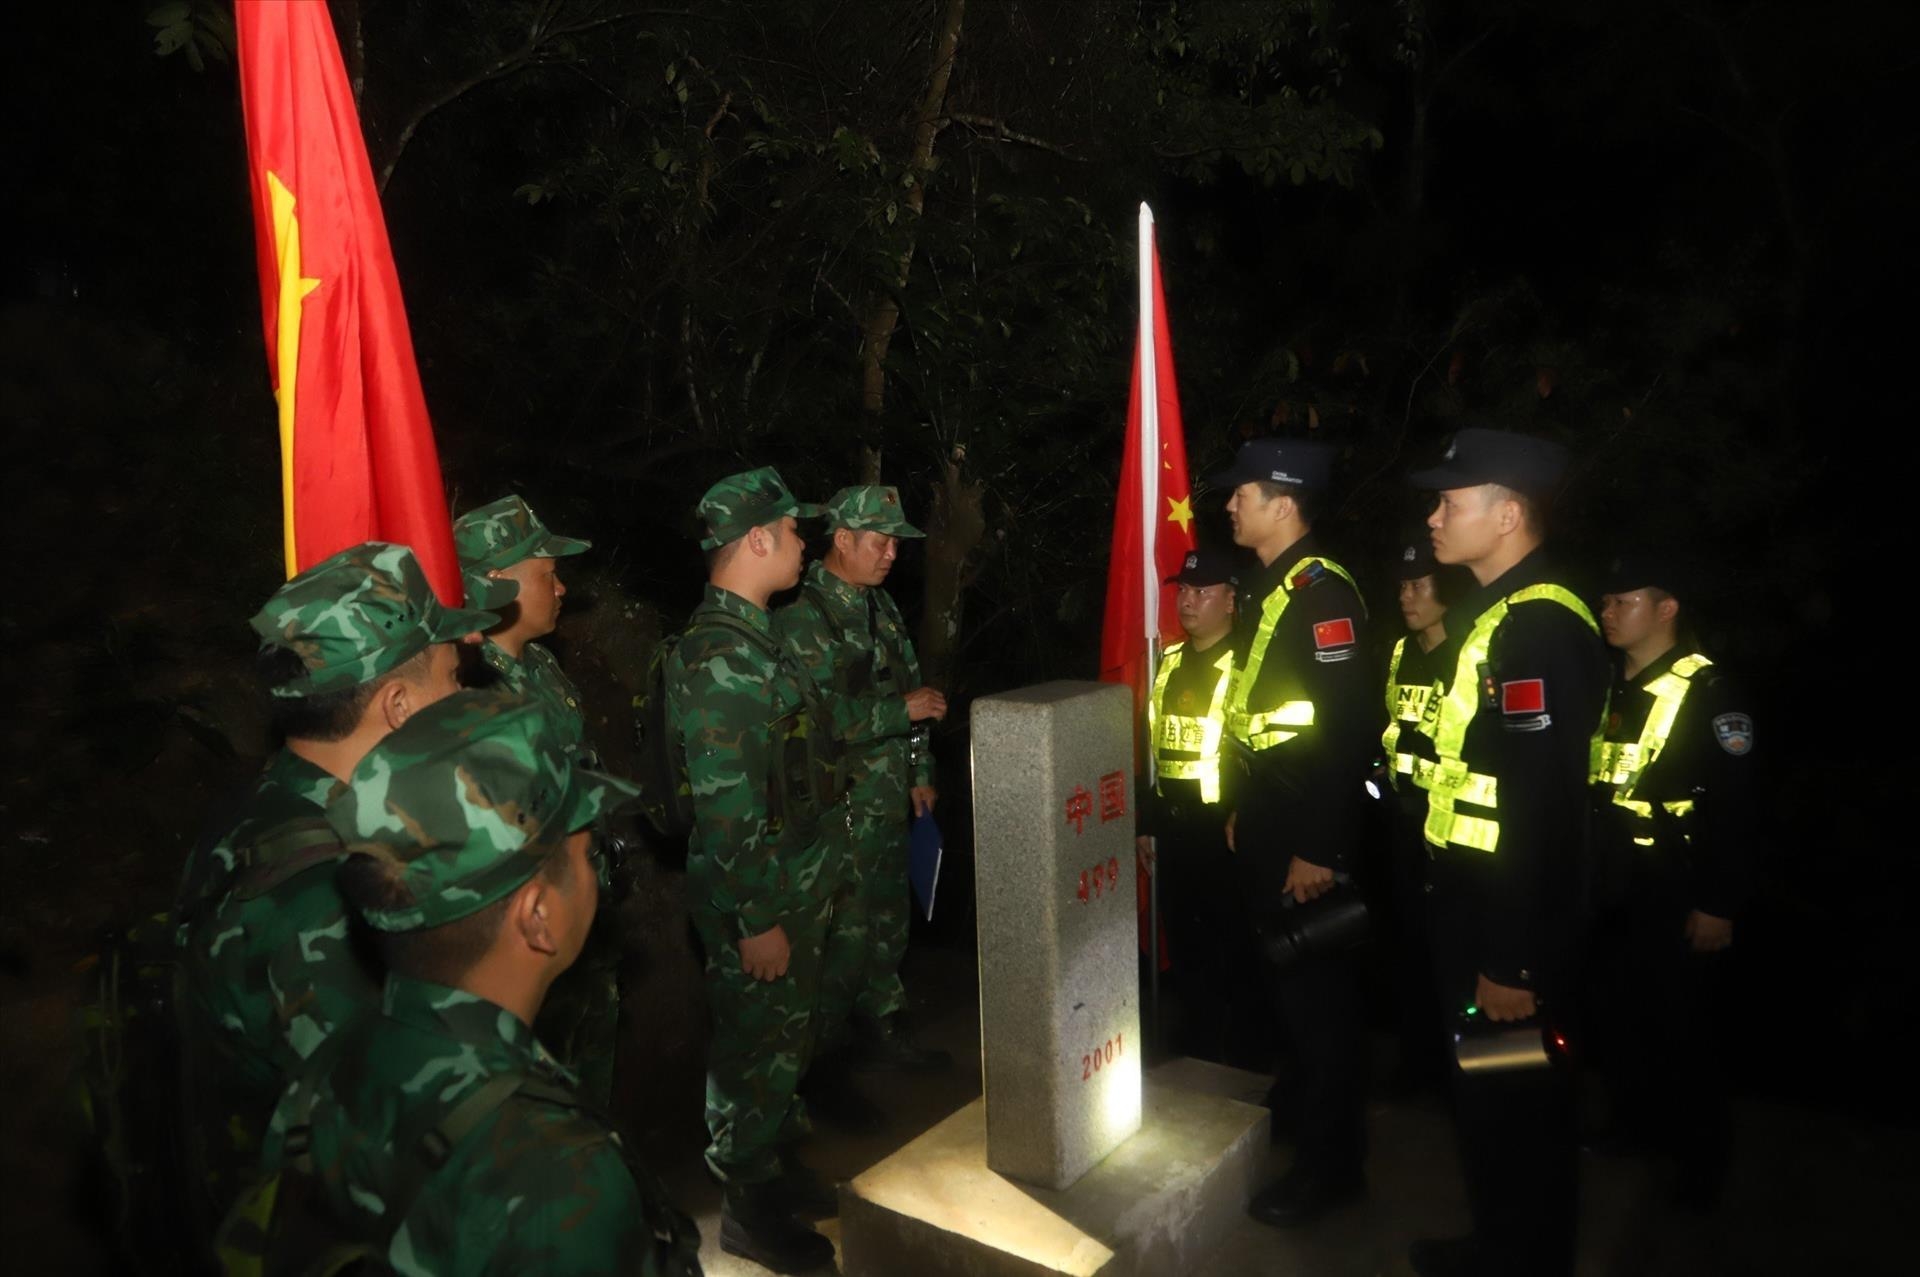 越中两国首次进行夜间边境地区联合巡逻。